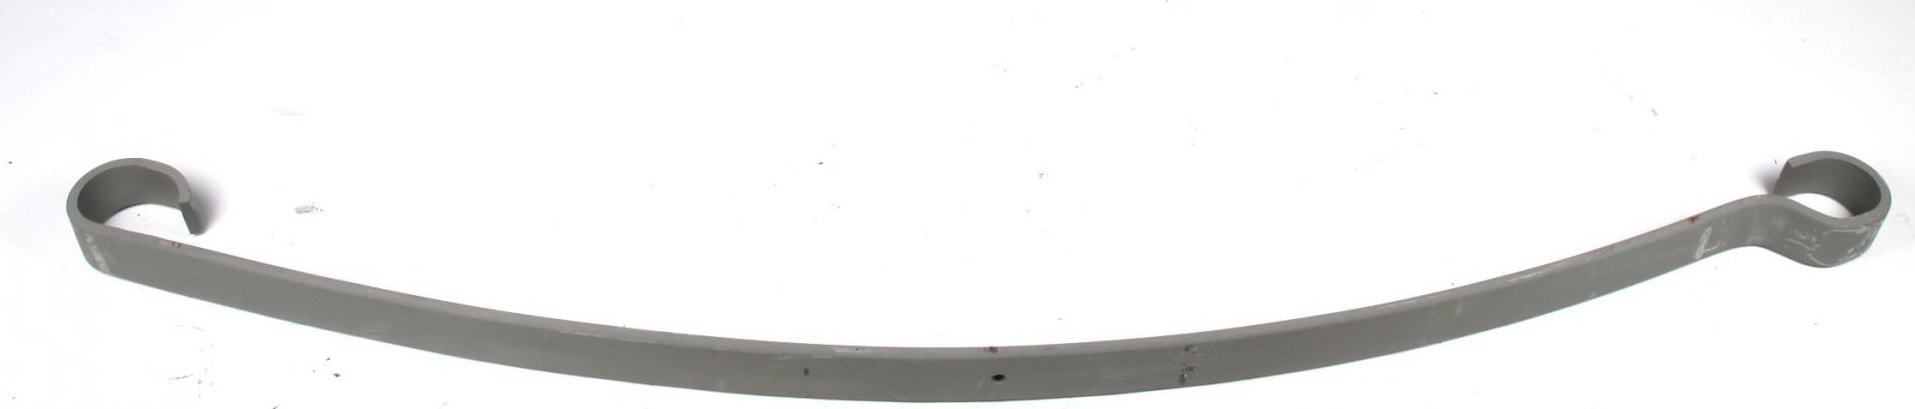 Рессоры Рессора задняя подкоренная Iveco Daily 30.8-49.12 (60/700/715) 10mm TES арт. 6728500219